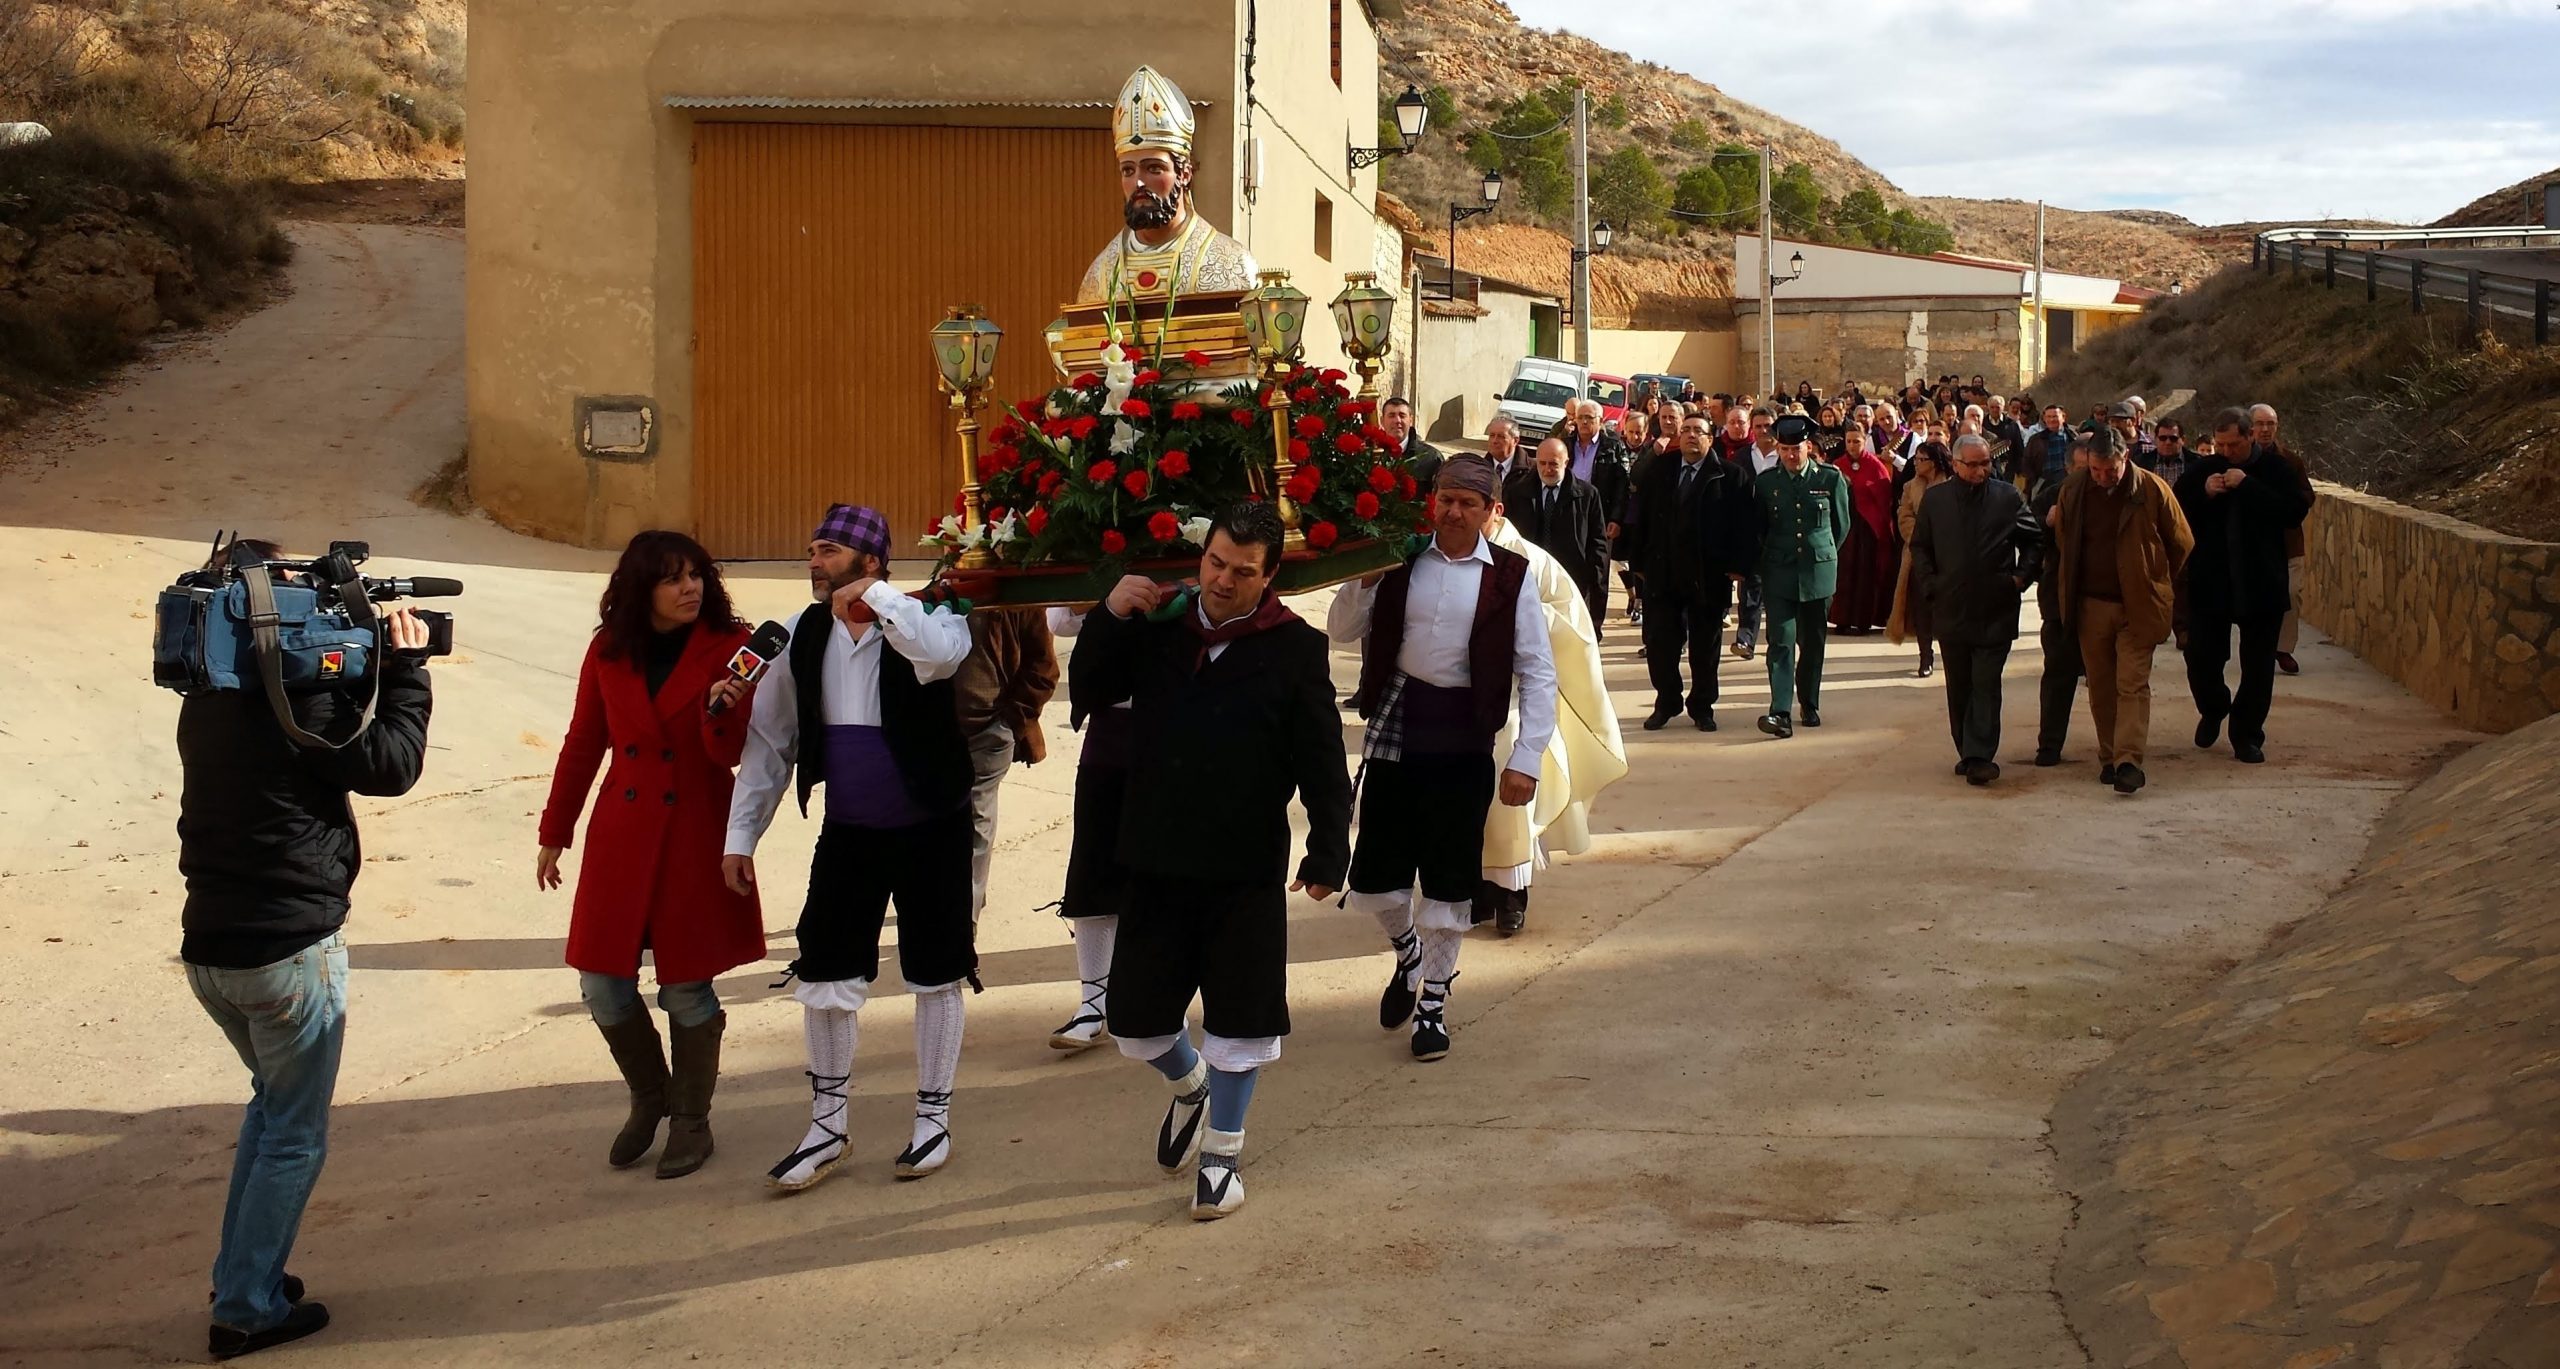 Aragón en Abierto (Aragón TV) cubre la procesión de 2014. >> Pincha para verla en la galería.